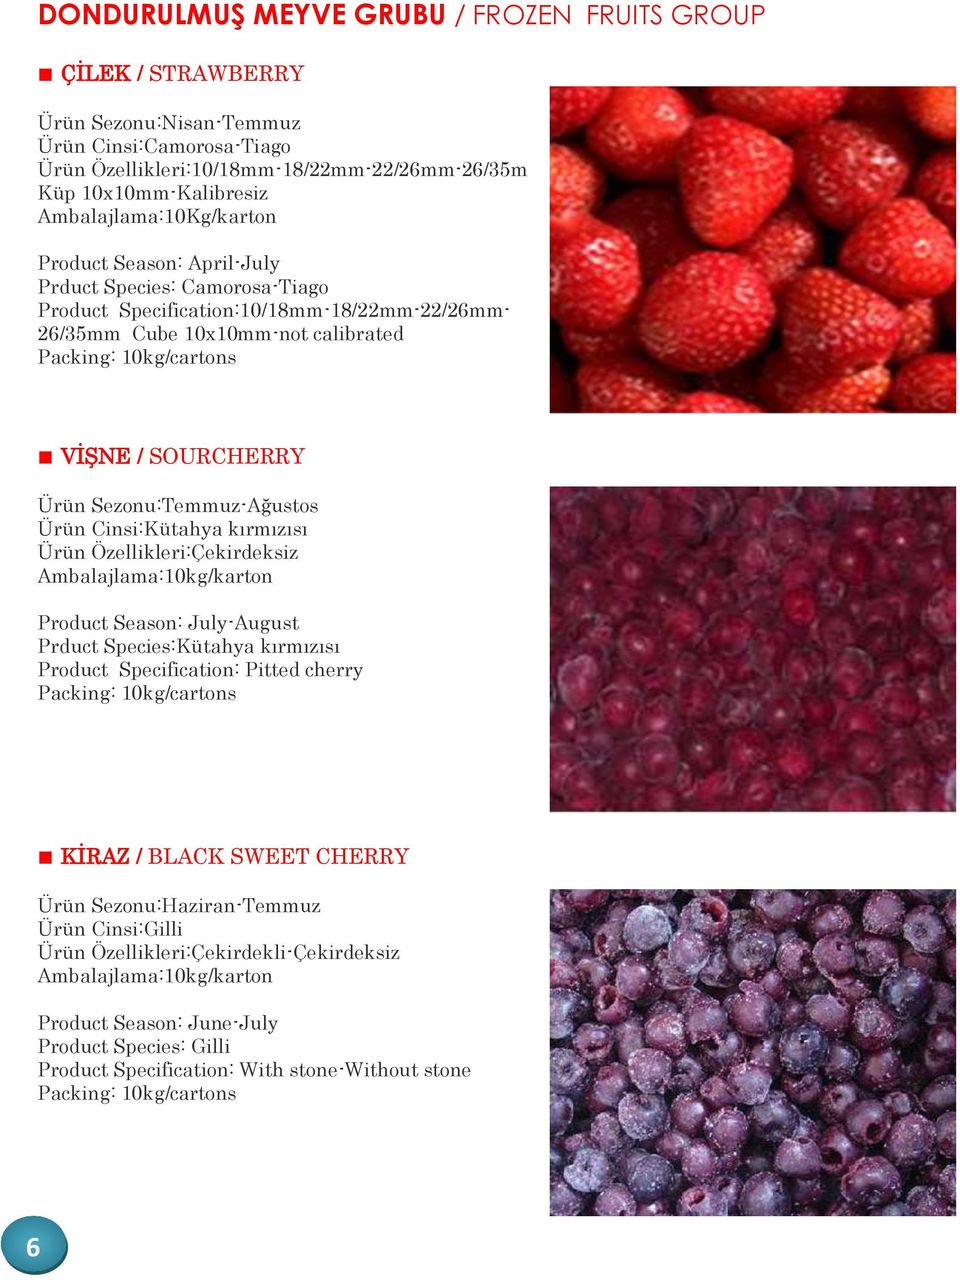 Sezonu:Temmuz-Ağustos Ürün Cinsi:Kütahya kırmızısı Ürün Özellikleri:Çekirdeksiz Product Season: July-August Prduct Species:Kütahya kırmızısı Product Specification: Pitted cherry KİRAZ /